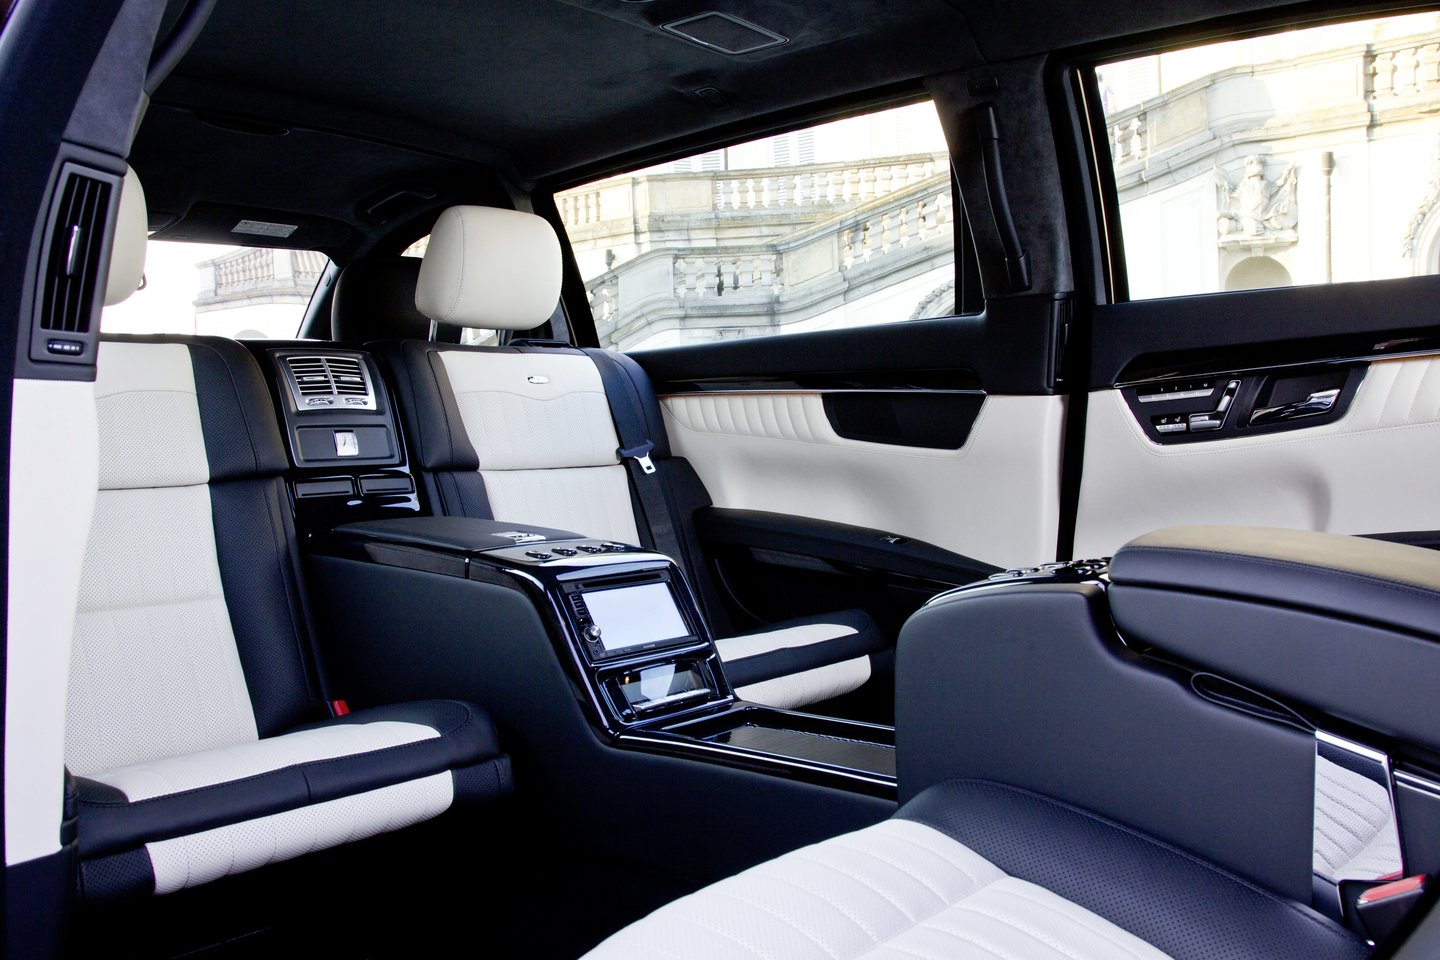  Šarvuotas „Mercedes-Benz S600 Pullman Guard“ limuzinas (2008-2013 m.).<br> Gamintojo nuotr.